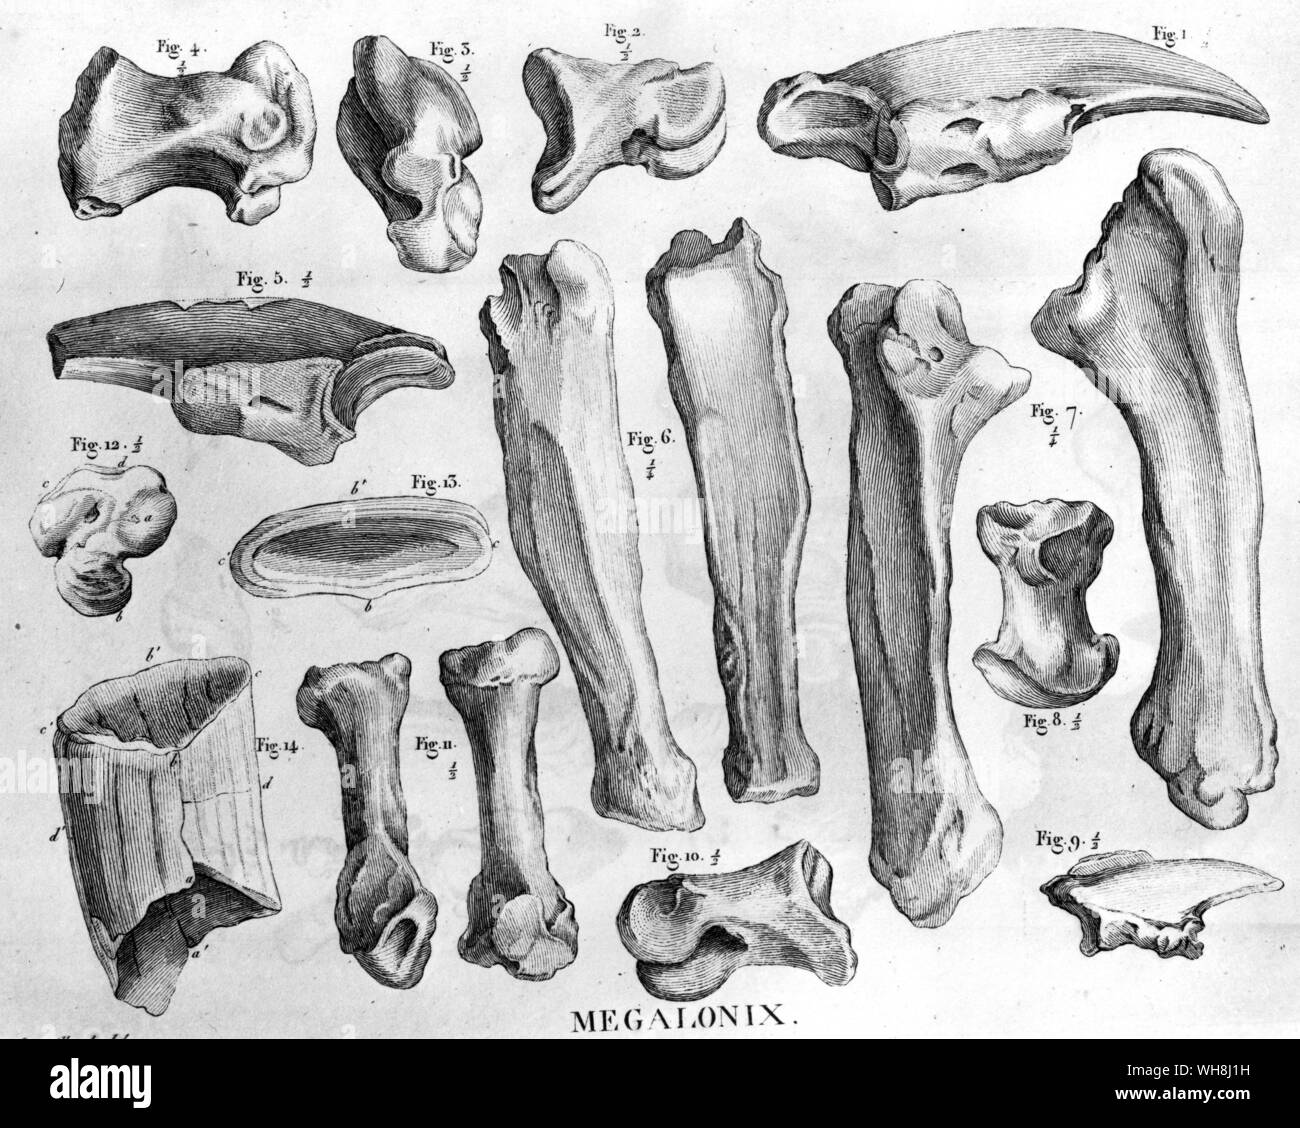 Les os de la Megalonyx (Megalonix). De Darwin et de l'atterrisseur Beagle par Alan Moorhead, page 85. Banque D'Images